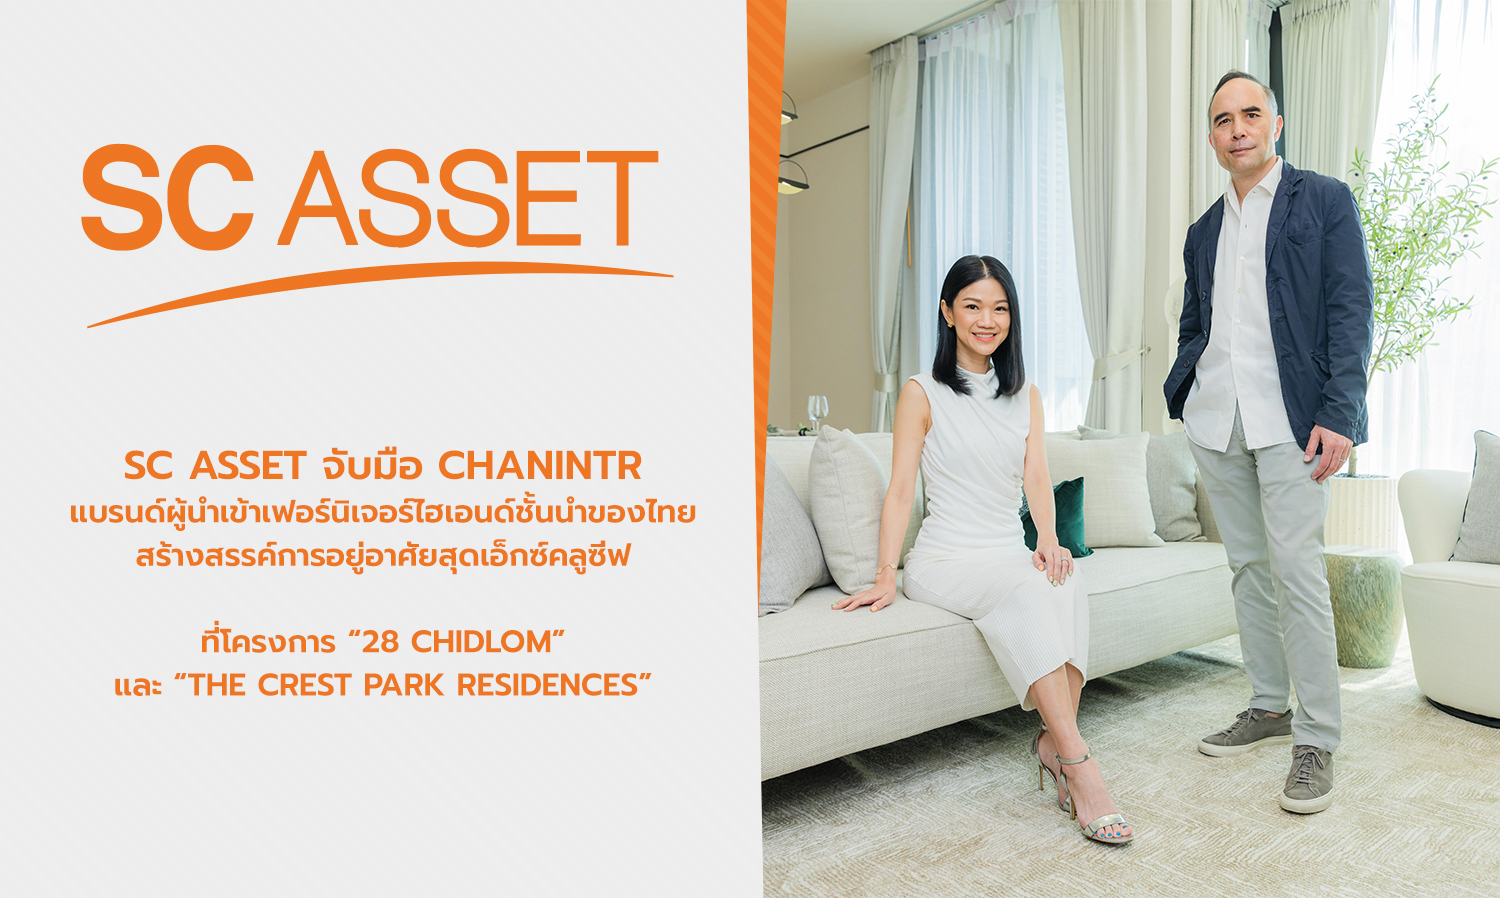 SC Asset จับมือ CHANINTR แบรนด์ผู้นำเข้าเฟอร์นิเจอร์ไฮเอนด์ชั้นนำของไทย สร้างสรรค์การอยู่อาศัยสุดเอ็กซ์คลูซีฟที่โครงการ 28 CHIDLOM และ The Crest Park Residences